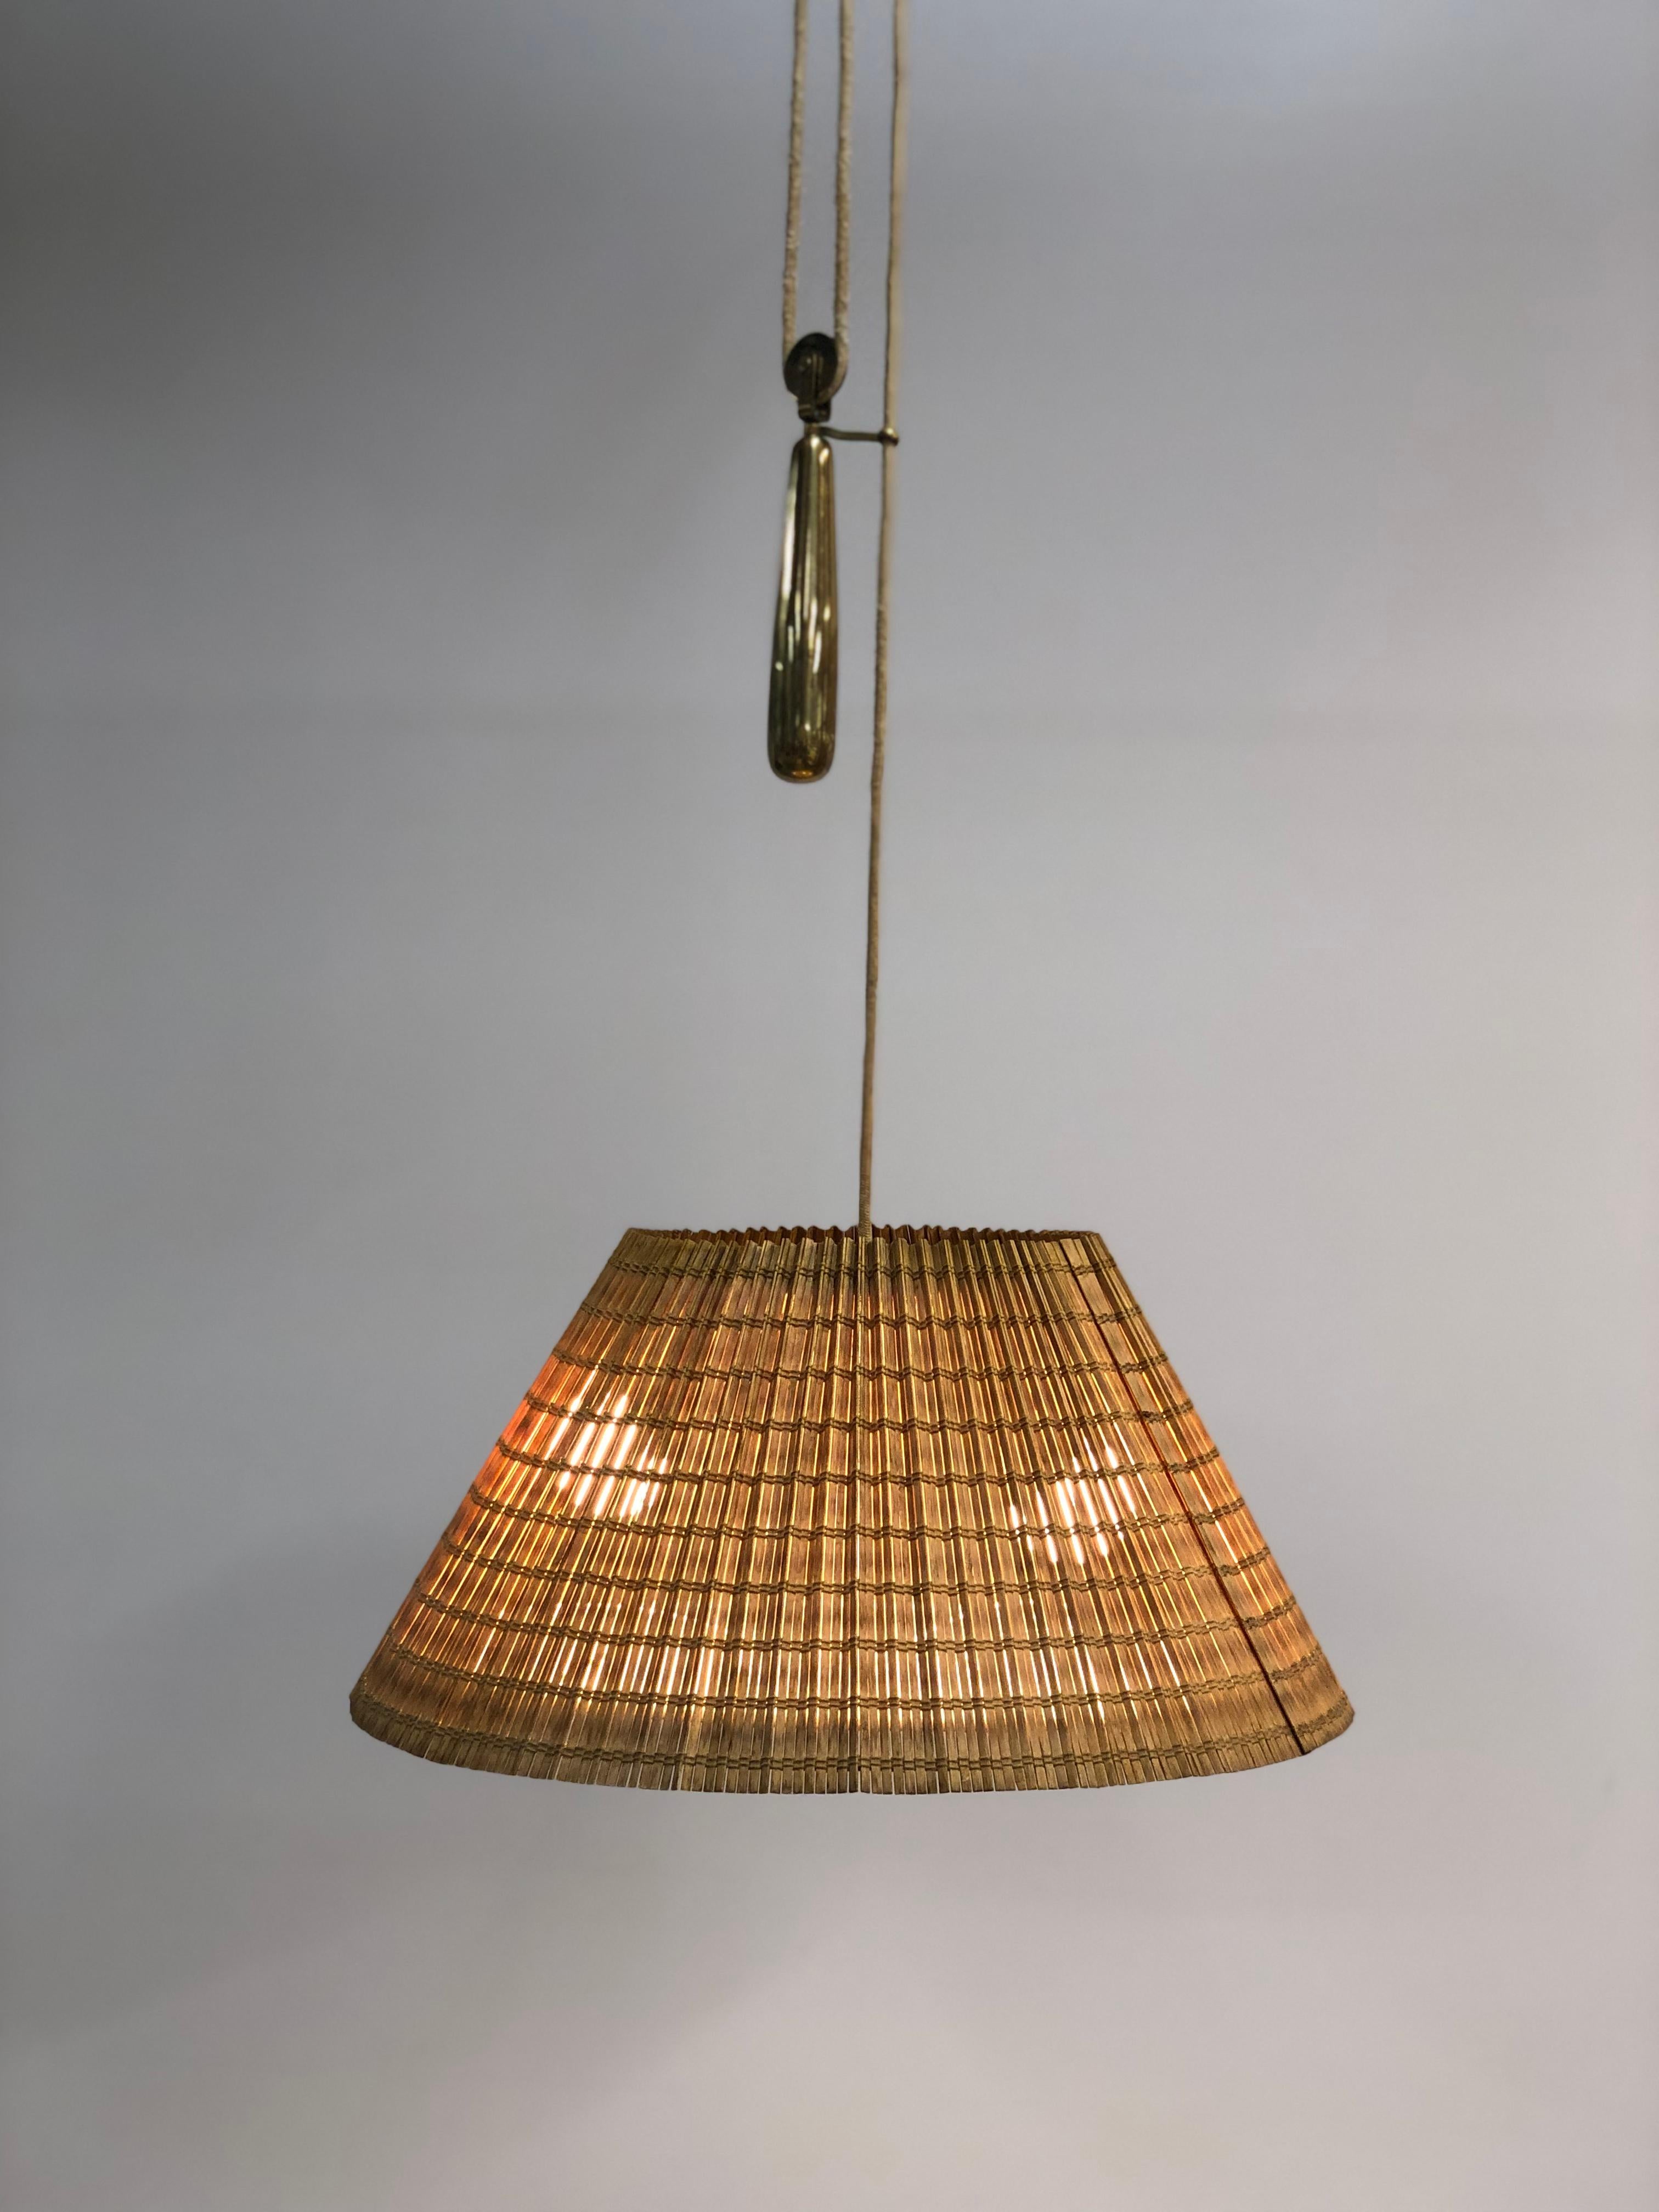 Eine schöne verstellbare Lampe von Paavo Tynell, die das patinierte Messing harmonisch mit dem Rattan und dem Stoffschirm verbindet. Das Gegengewicht zeigt Tynells Genialität, indem es die Leuchte für verschiedene Deckenhöhen geeignet macht. Die